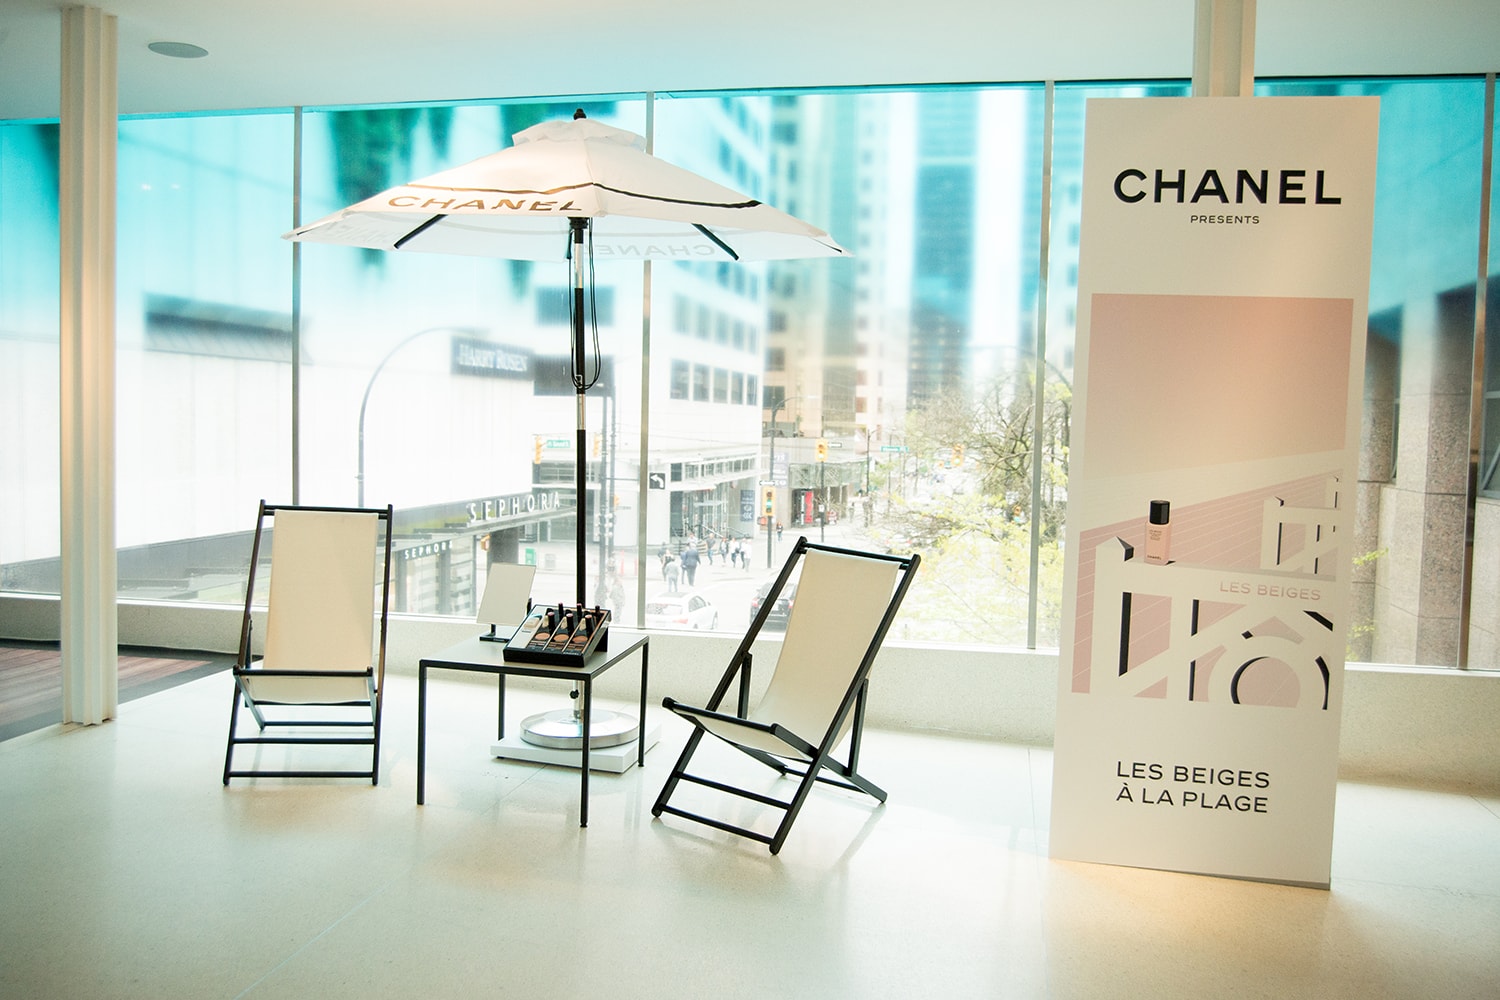 Chanel Beauty Lipsticks LES BEIGES À LA PLAGE Vancouver Pop-Up Store Makeup Holt Renfrew Lounge Chair Umbrella